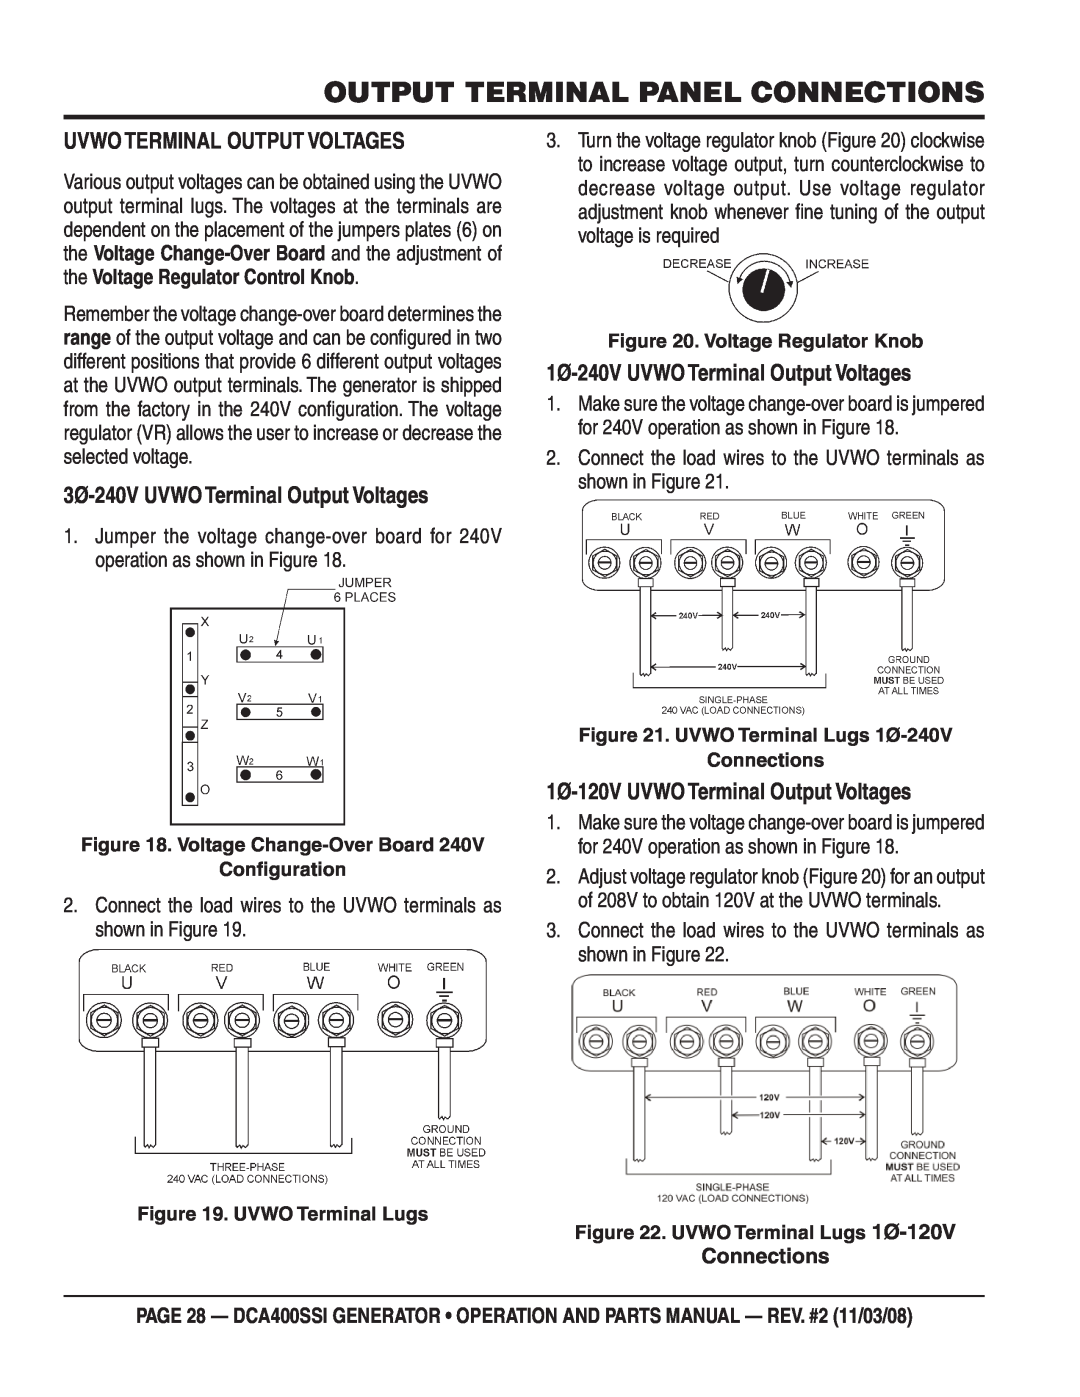 Multiquip DCA400SSI Output Terminal Panel Connections, Uvwo Terminal Output Voltages, 3Ø-240VUVWO Terminal Output Voltages 